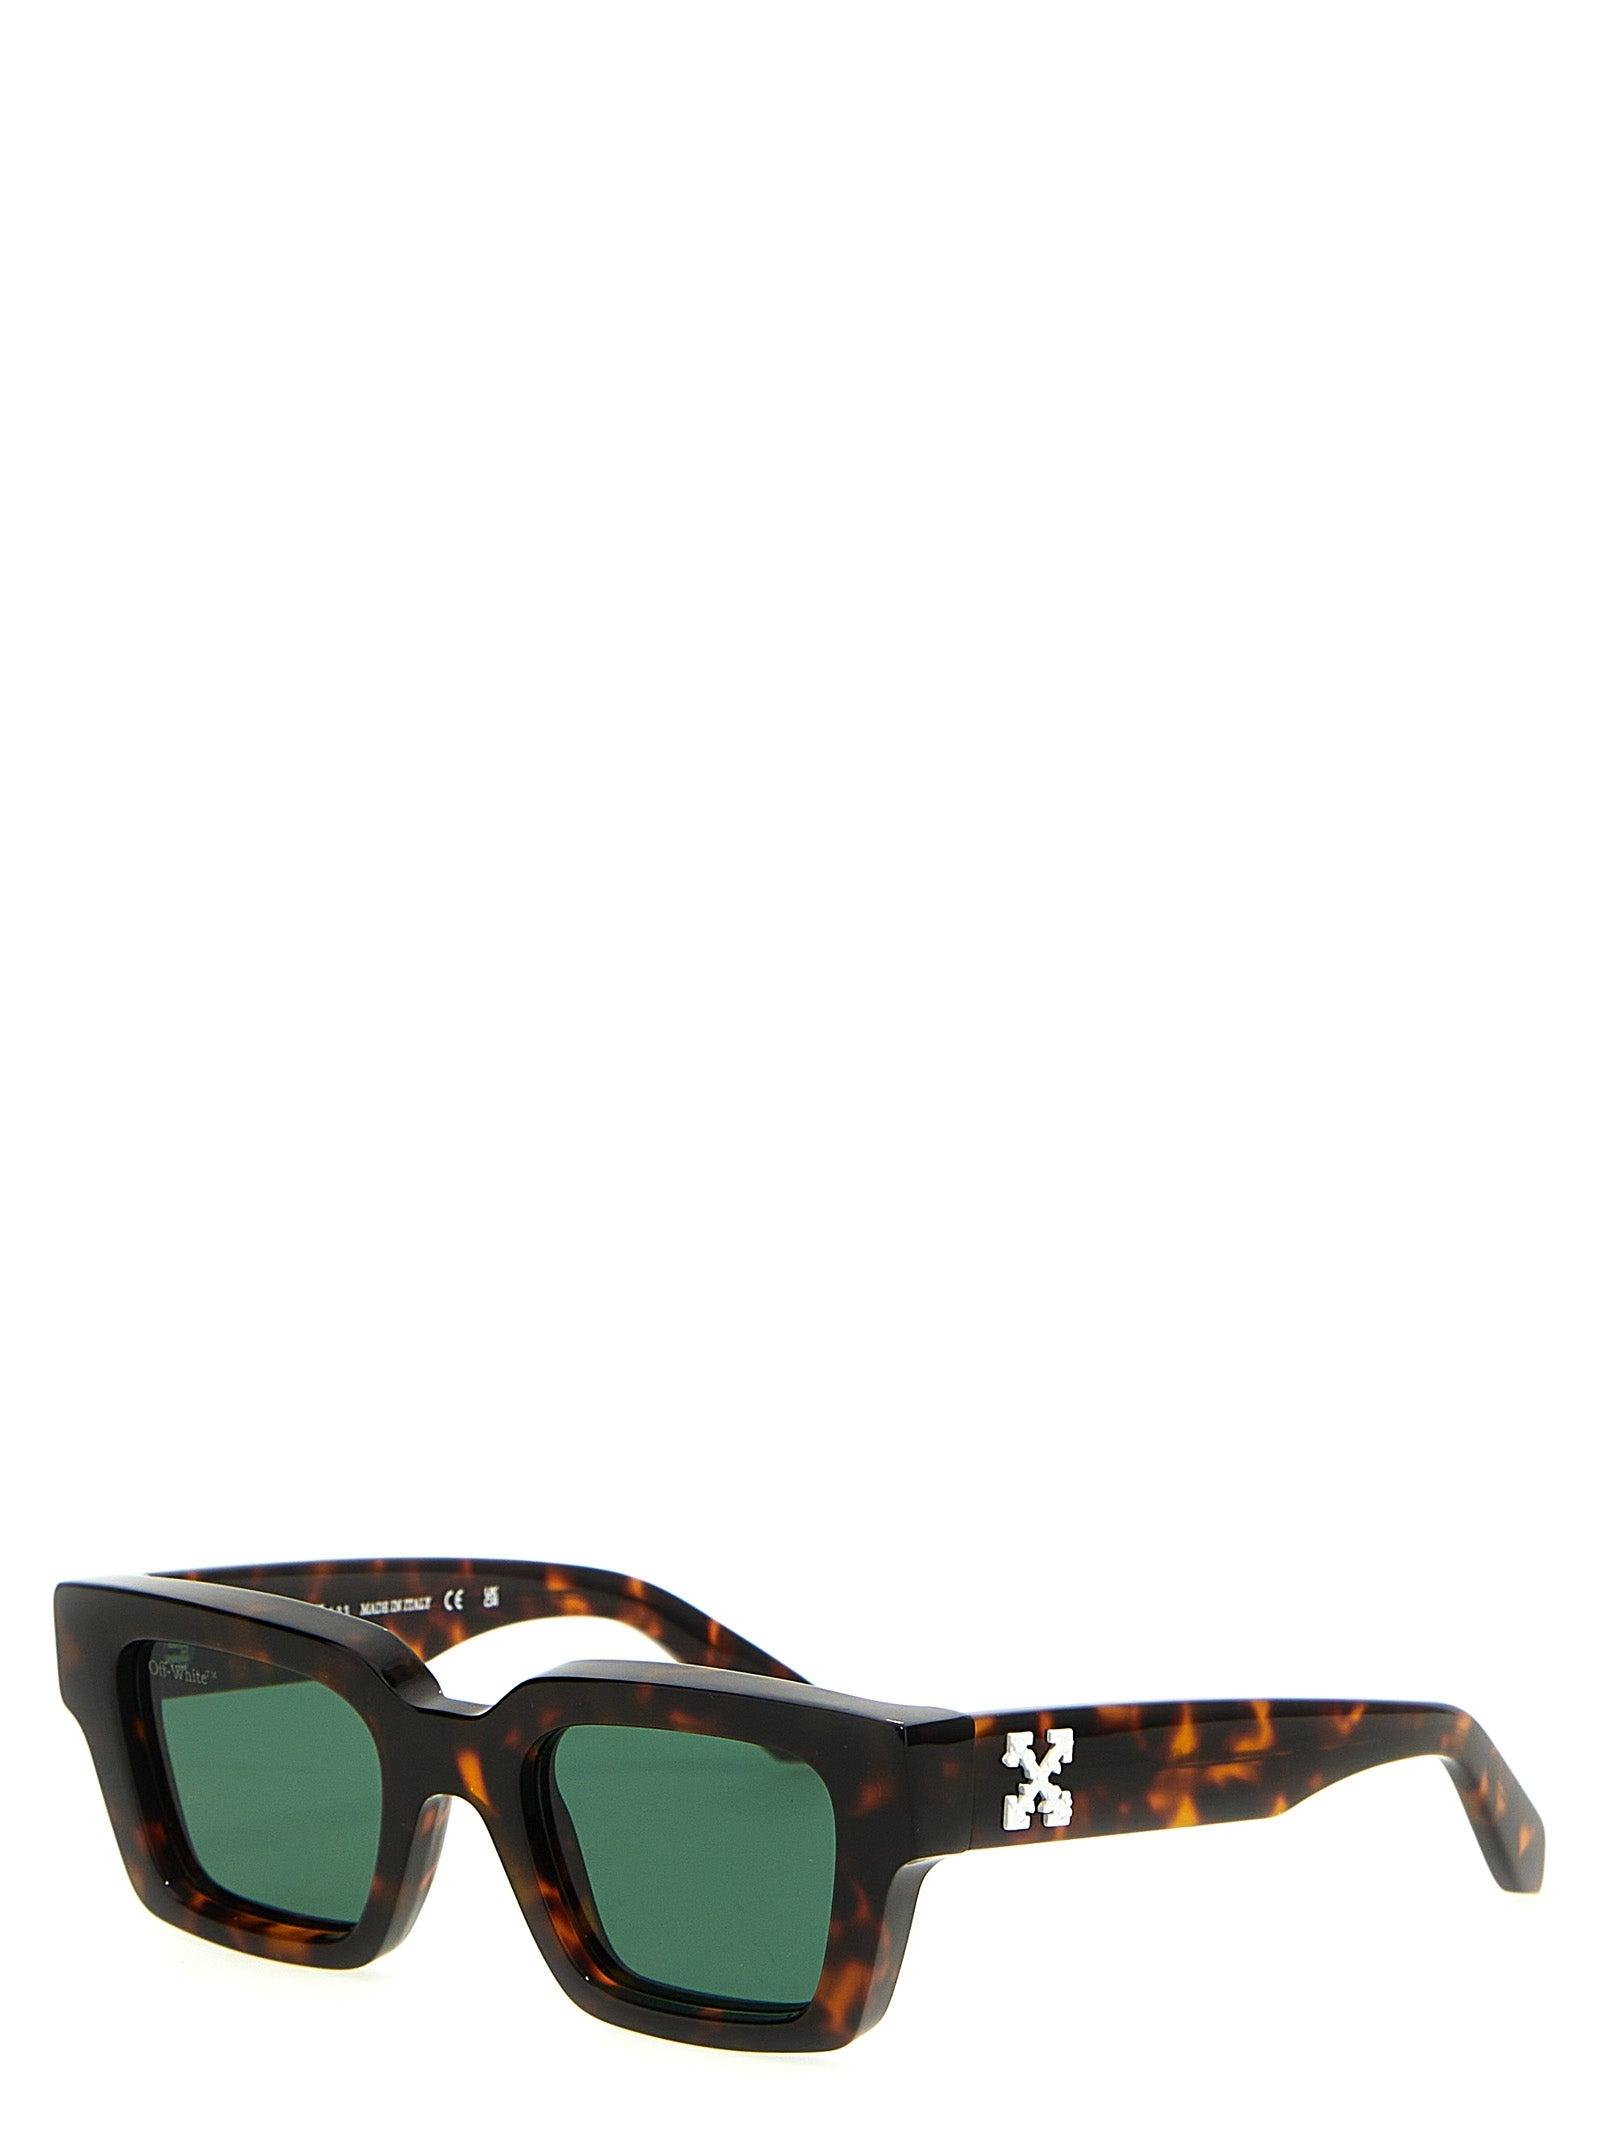 Off-White c/o Virgil Abloh 'virgil' Sunglasses in Green